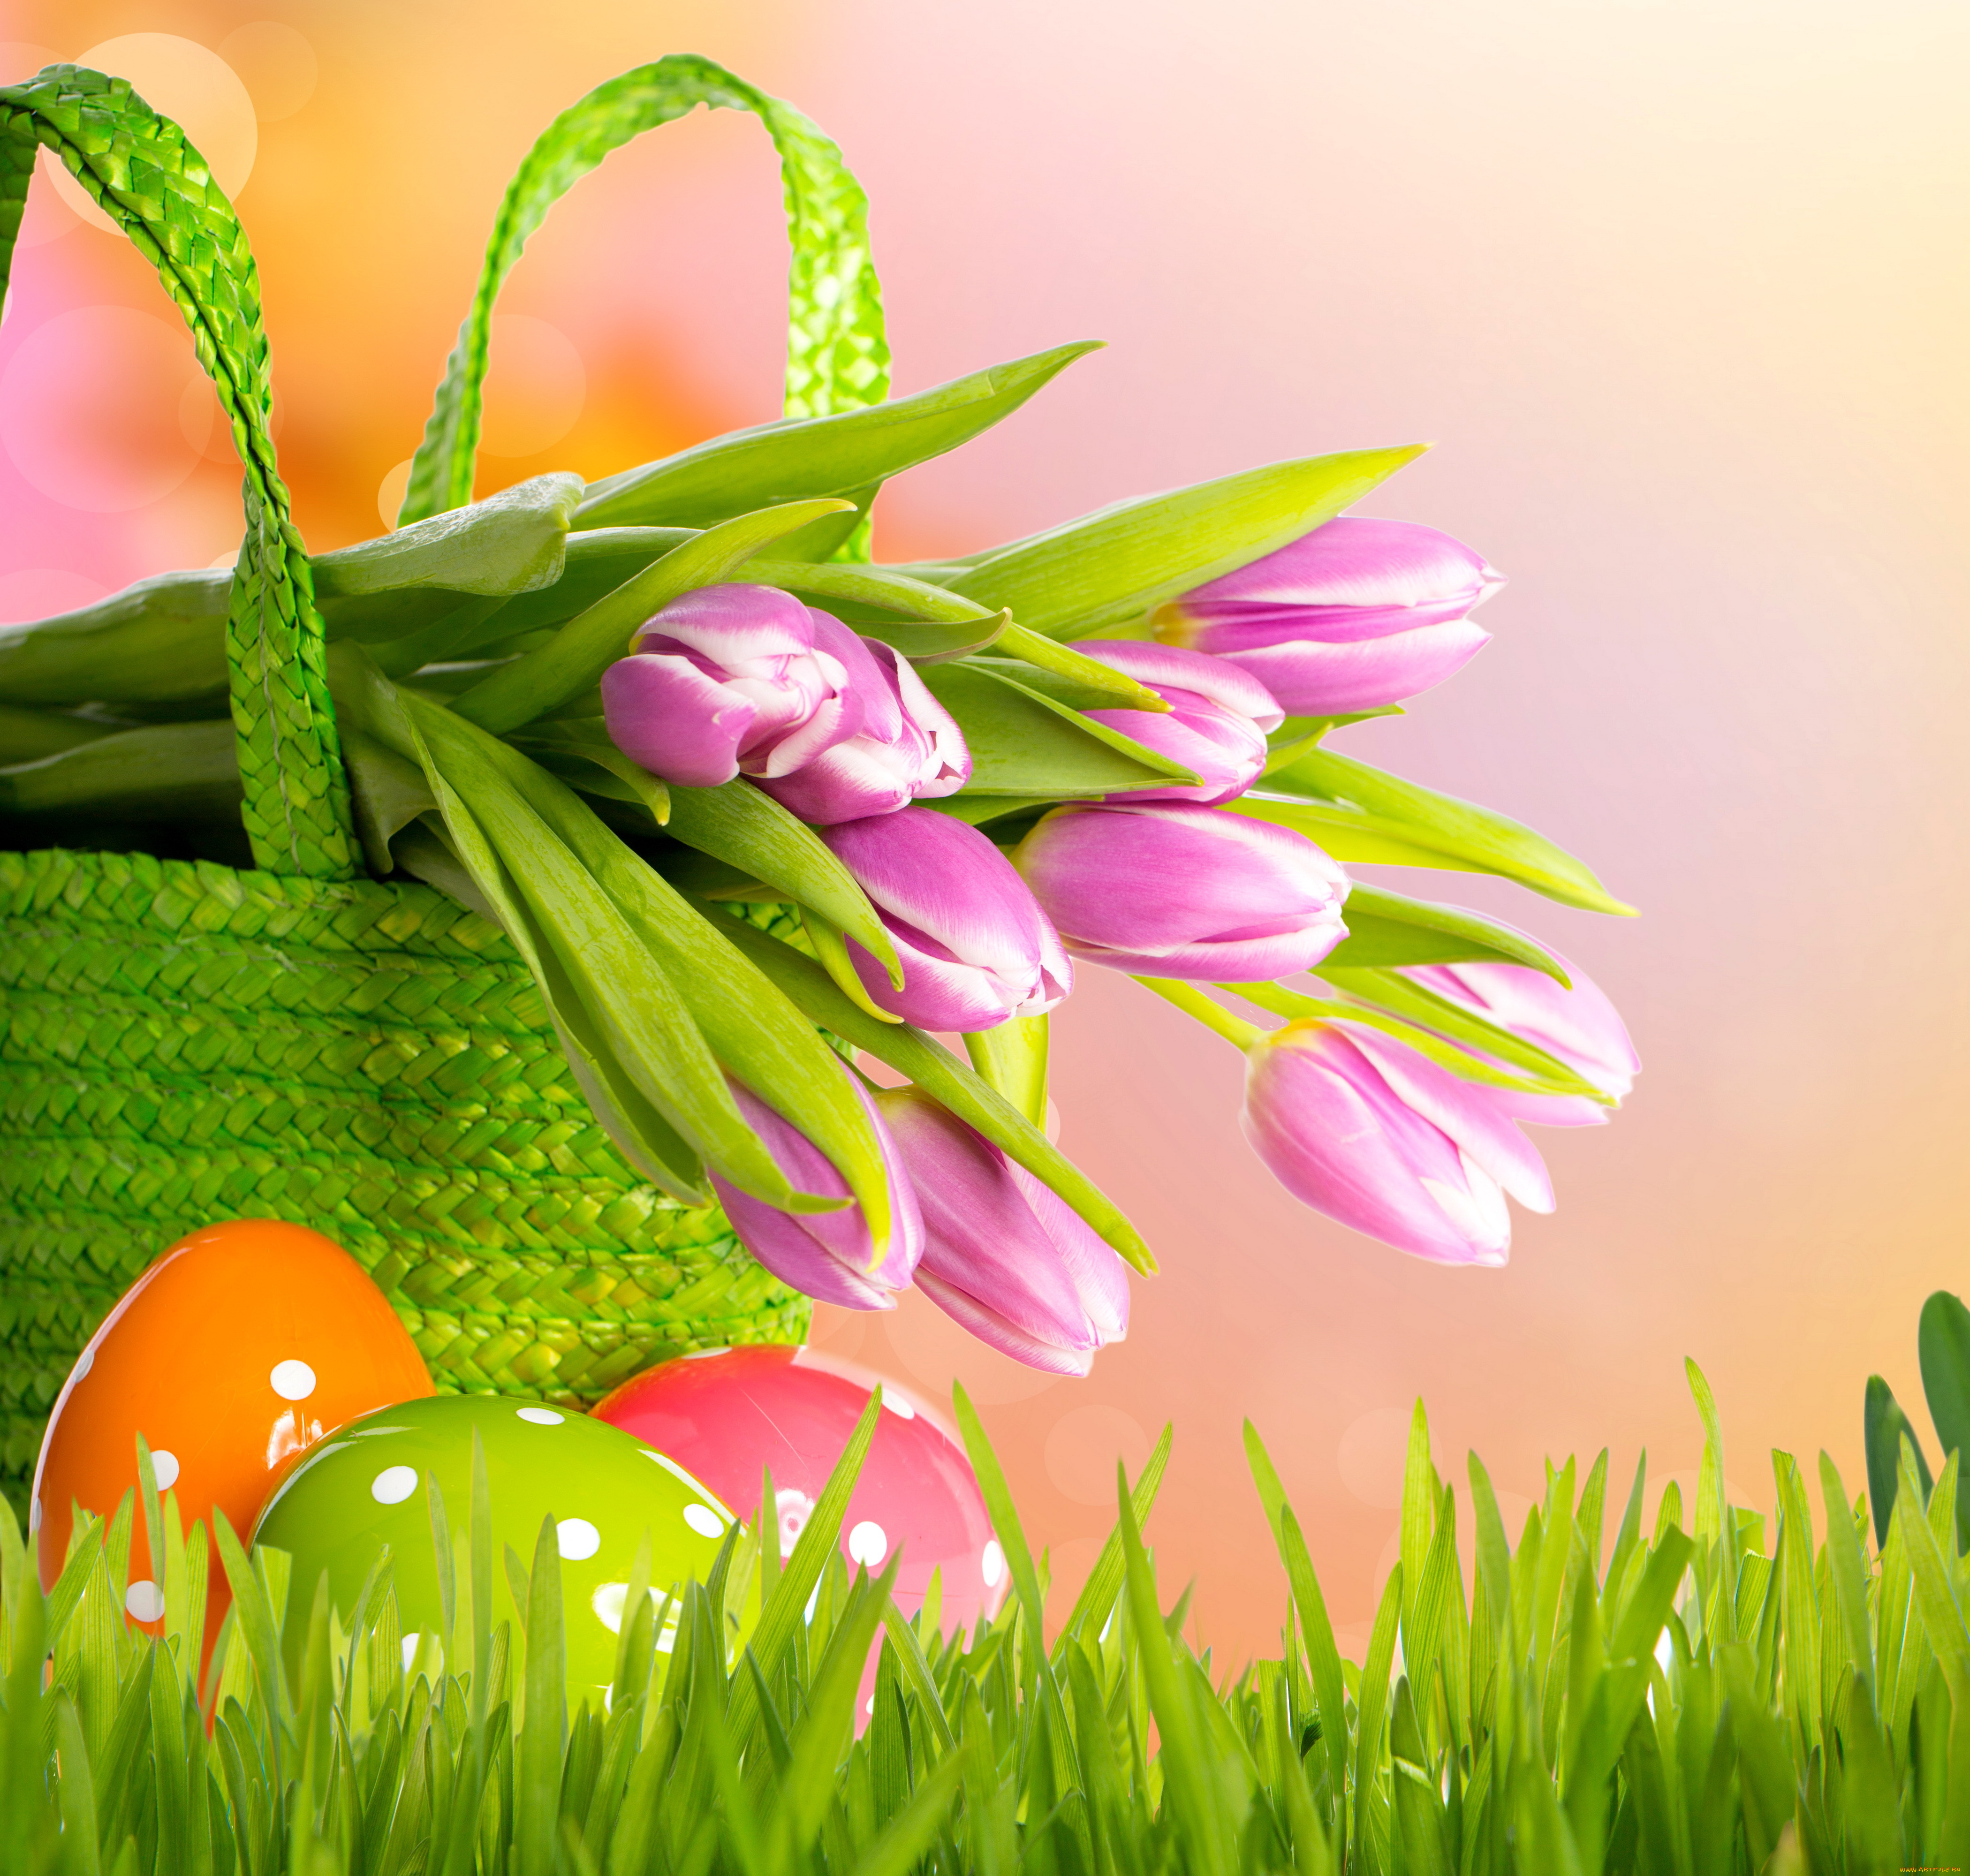 праздничные, пасха, grass, eggs, basket, tulips, flowers, spring, easter